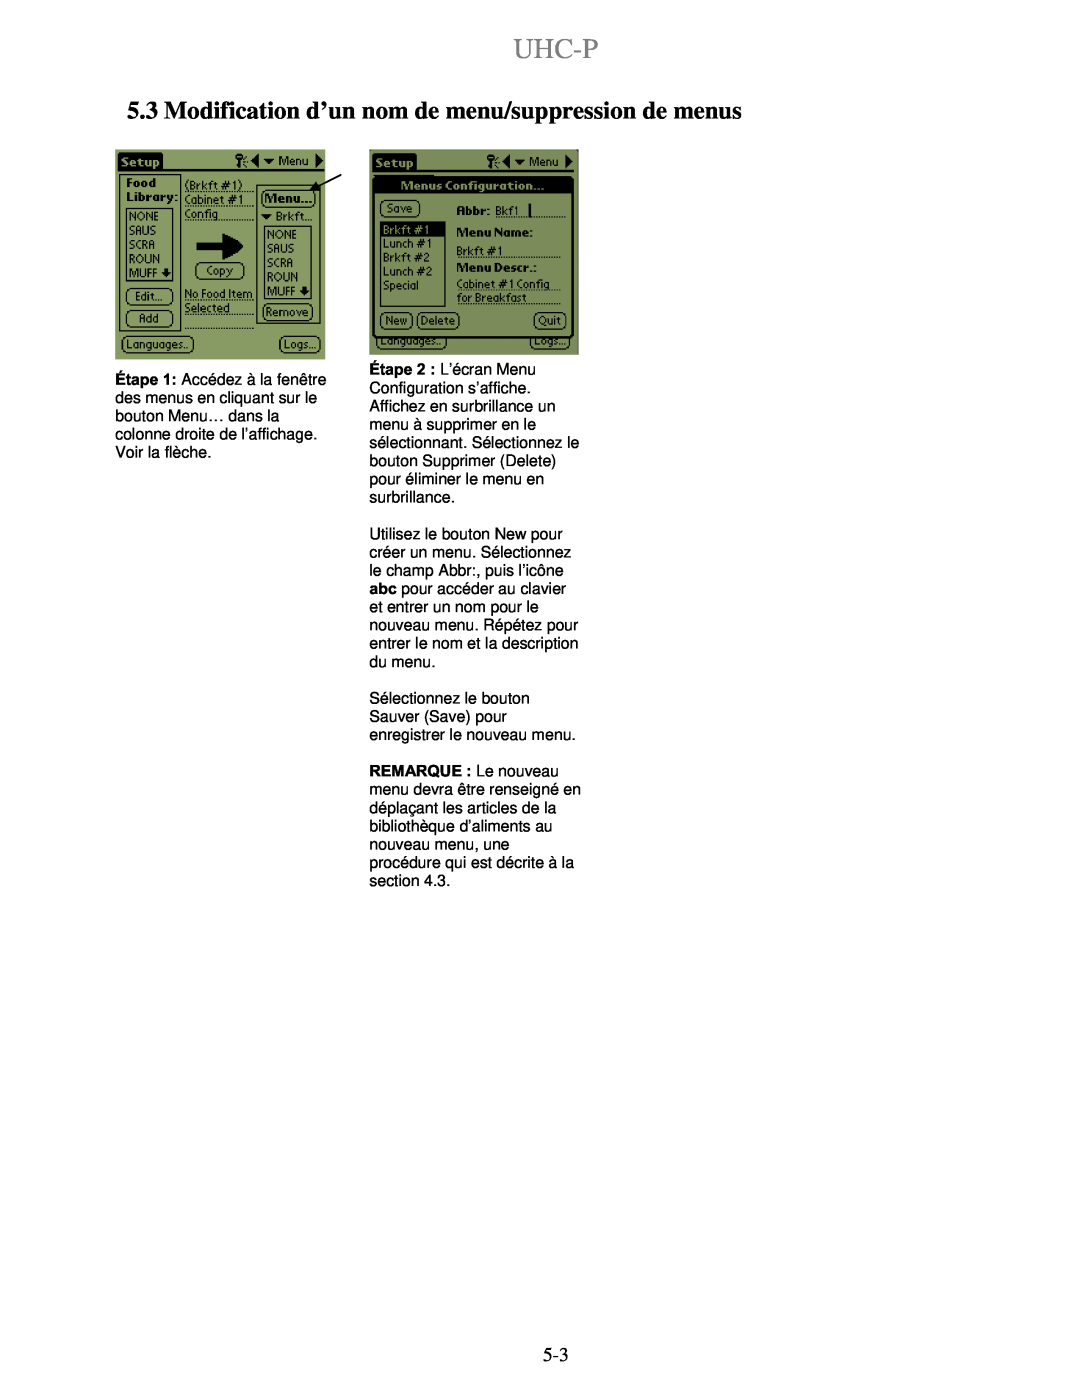 Frymaster UHC-PN, UHC-P 2 manuel dutilisation Modification d’un nom de menu/suppression de menus, Uhc-P 